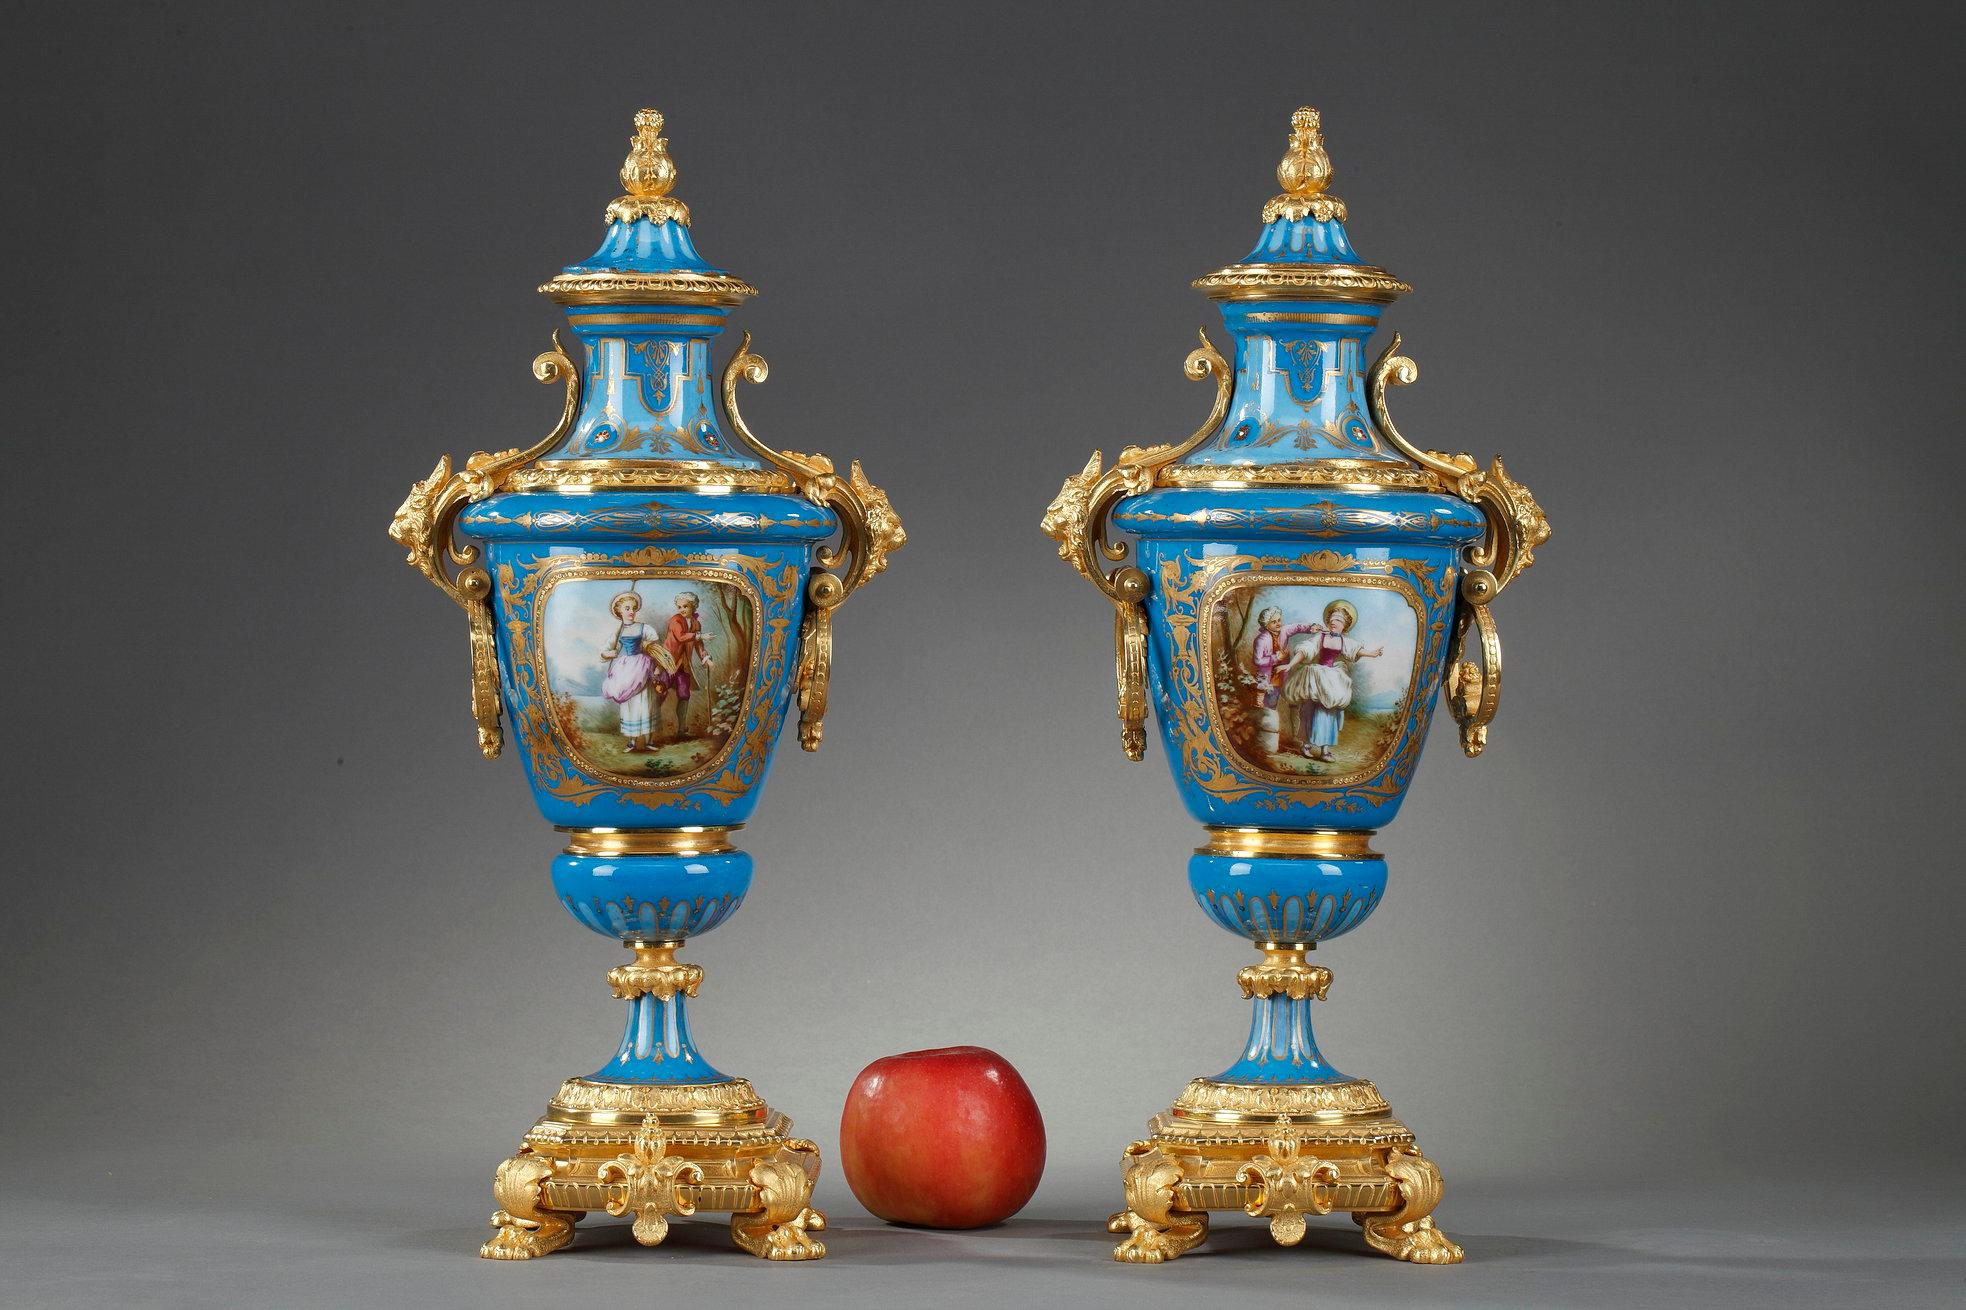 Paire de vases couverts en porcelaine polychrome de style Sèvres avec montures en bronze doré. 

La base repose sur quatre pieds griffes et des cartouches en forme de cuir découpé ornés de coquillages. Les poignées en bronze doré sont décorées